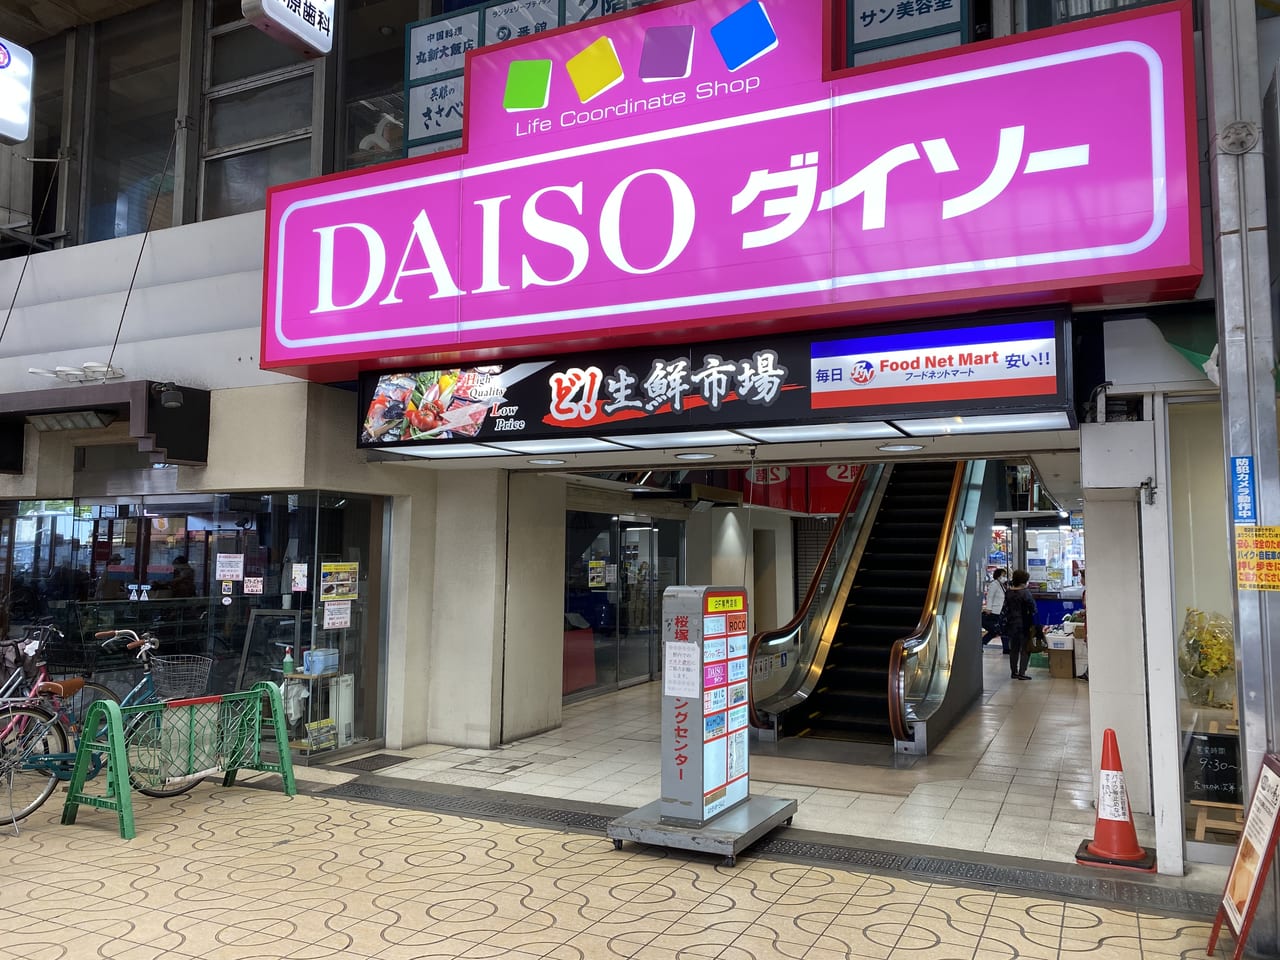 桜塚ショッピングセンター